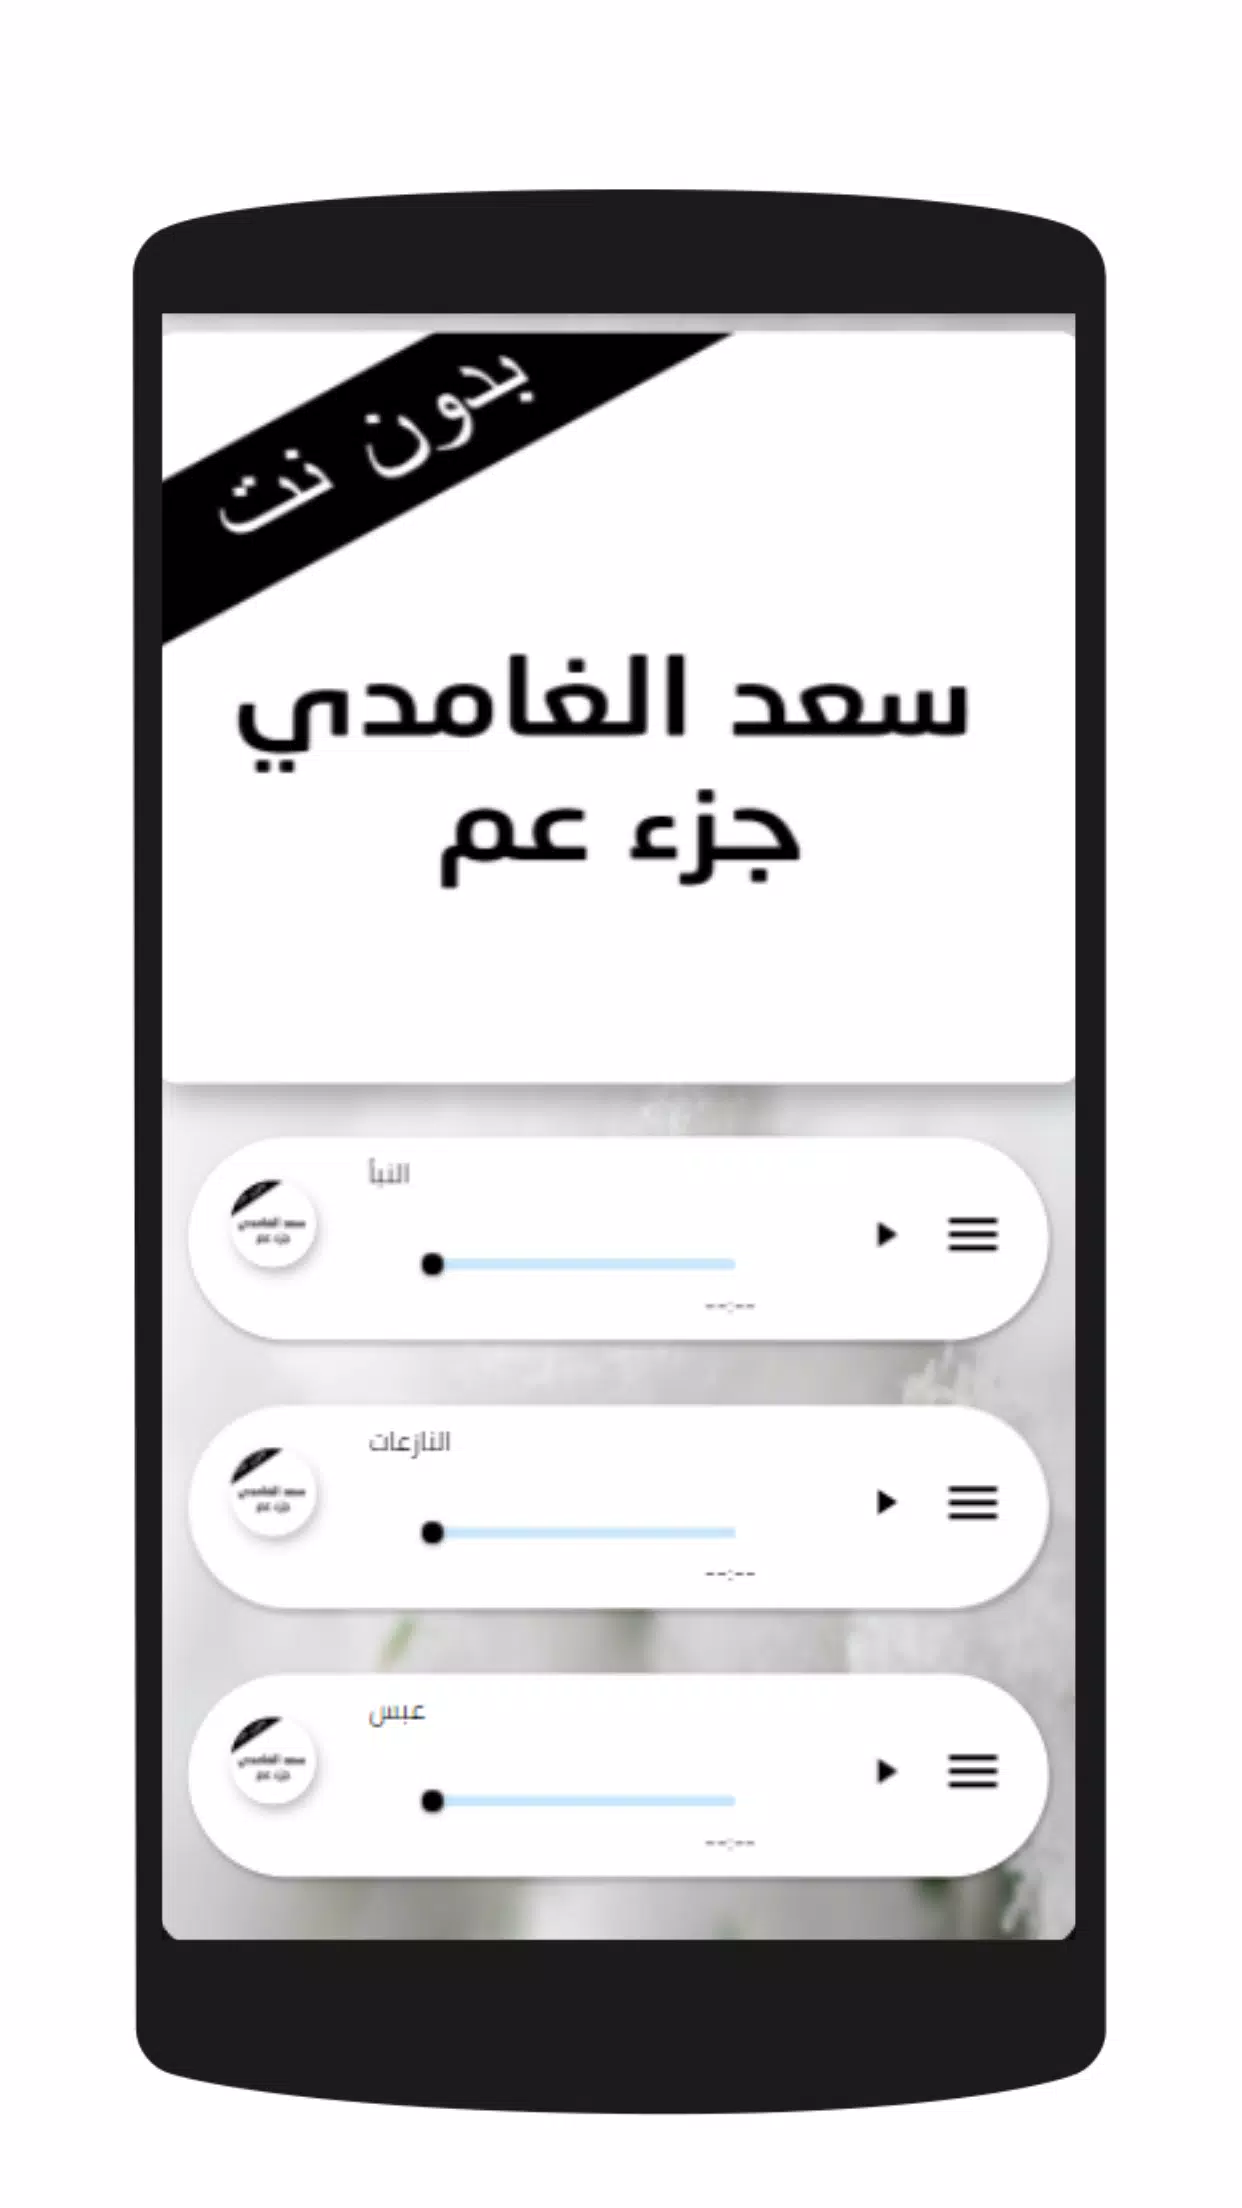 سعد الغامدي جزء عم mp3 APK for Android Download